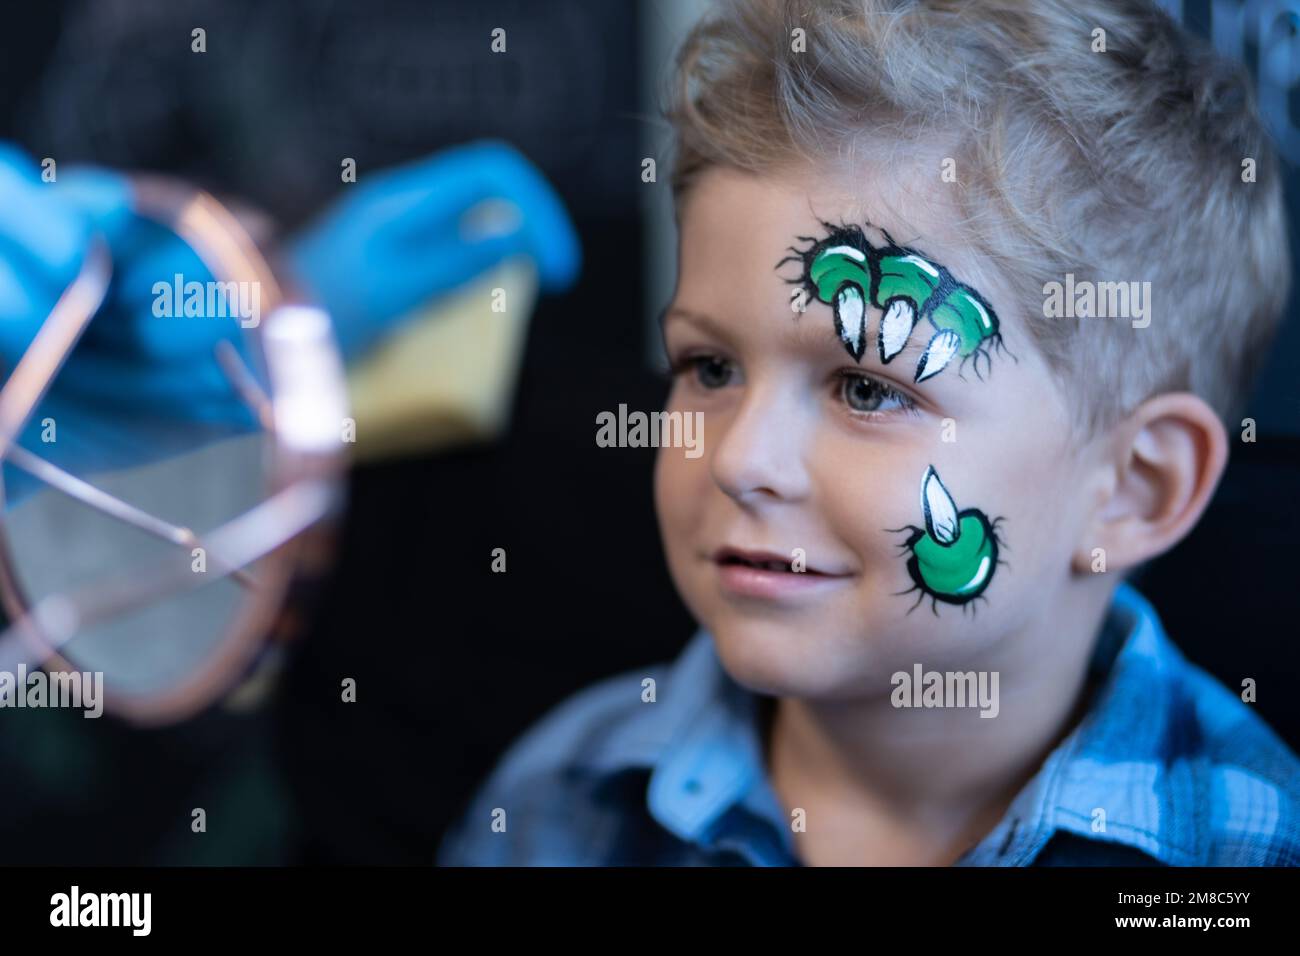 Auf einer Kinderparty sieht ein süßes Kind ein Bild auf seinem Gesicht im Spiegel – ein Bild von Dinosaurier- oder Drachenkrallen. Stockfoto